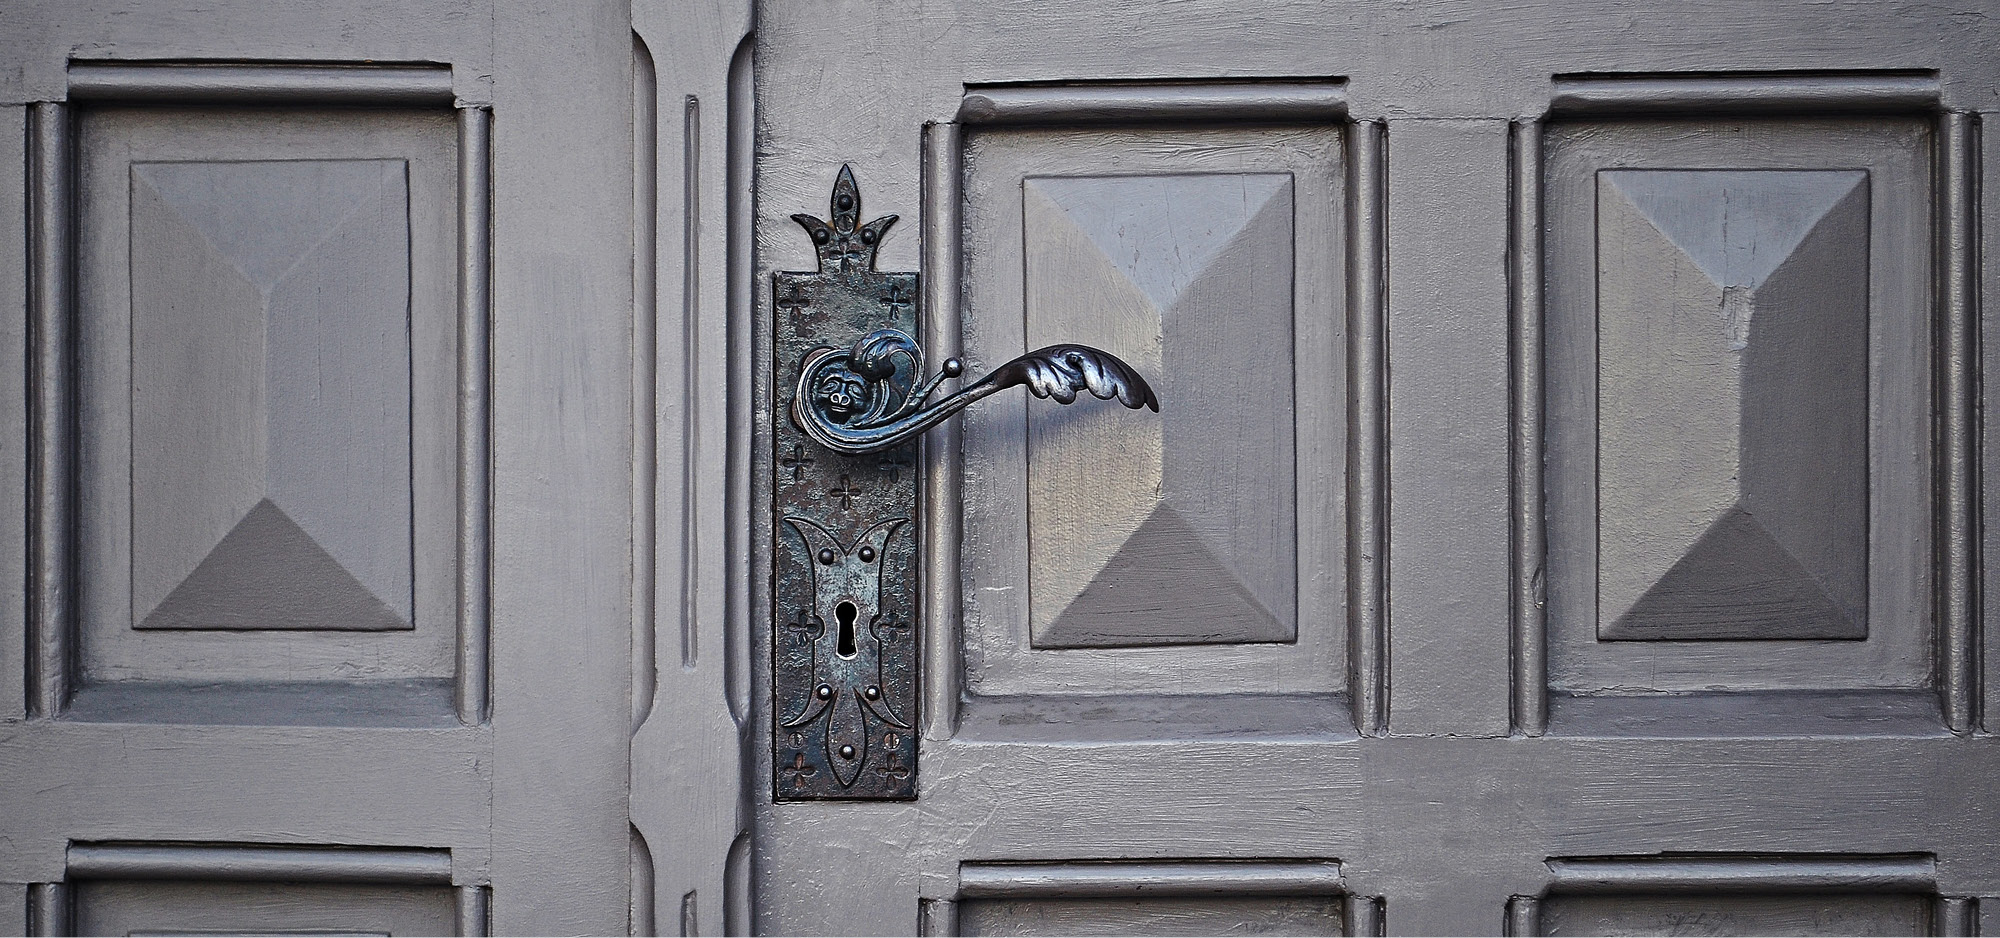 front door handle